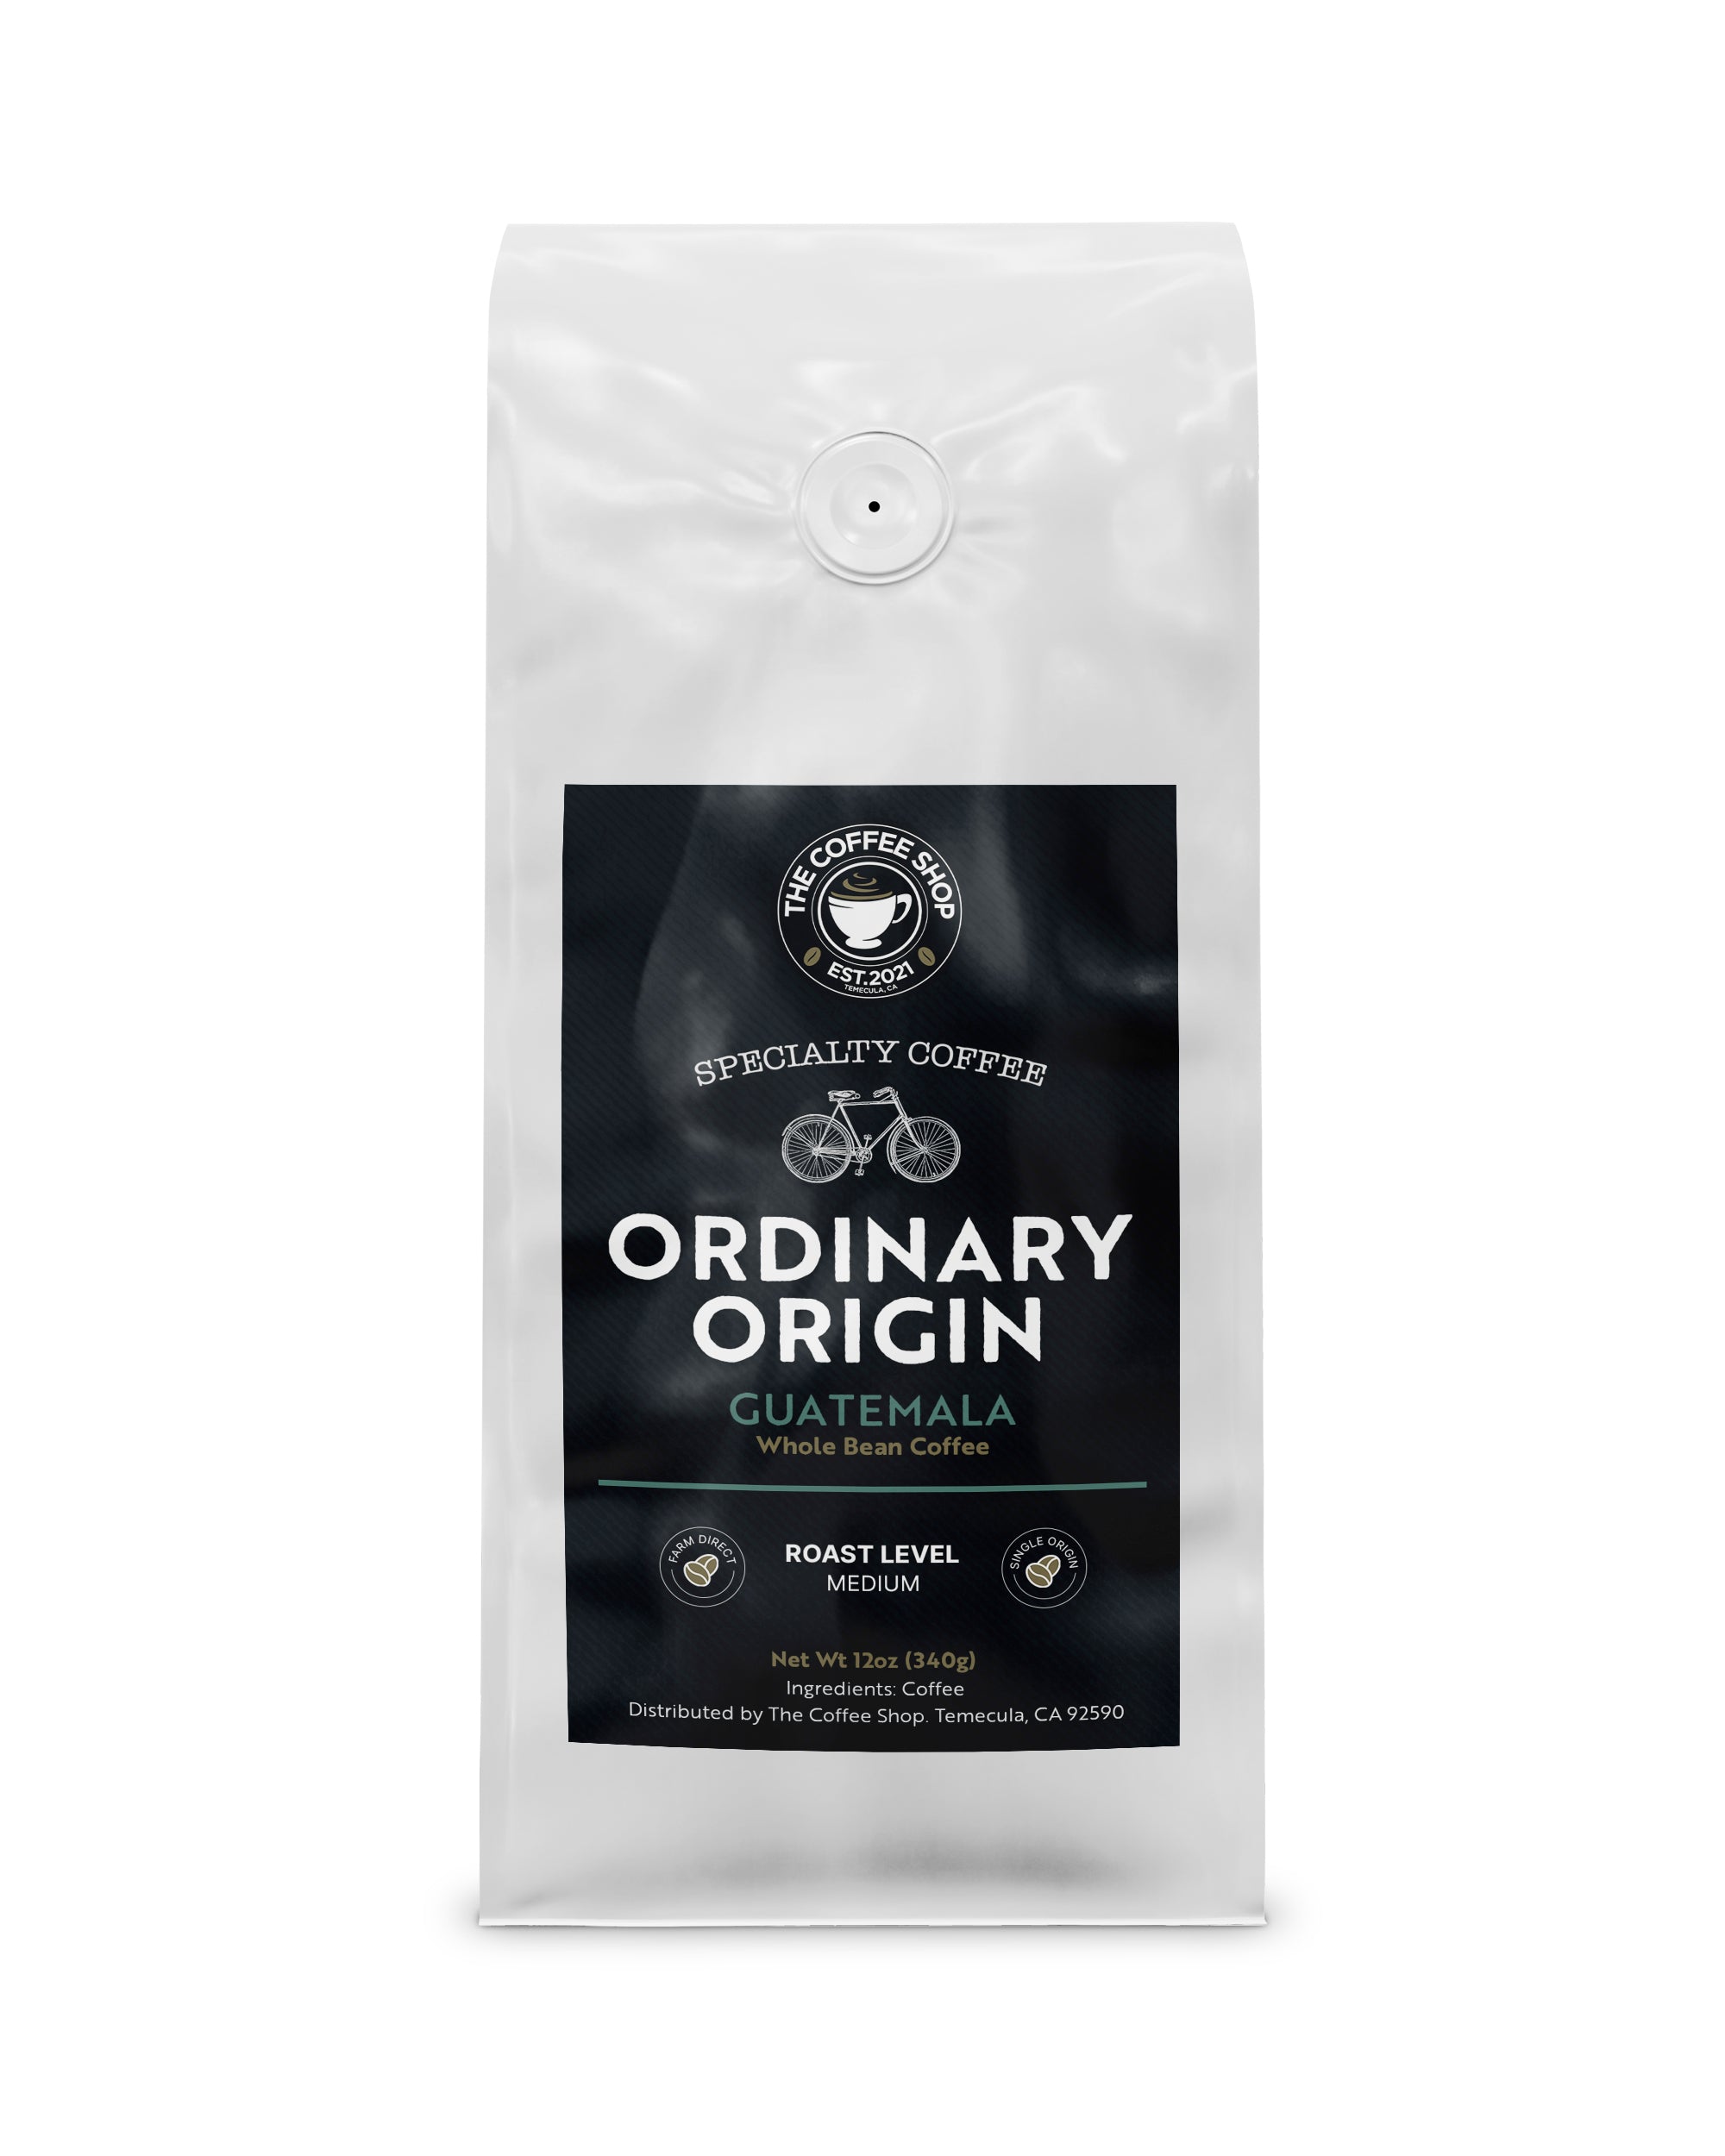 Ordinary Origin Specialty Coffee